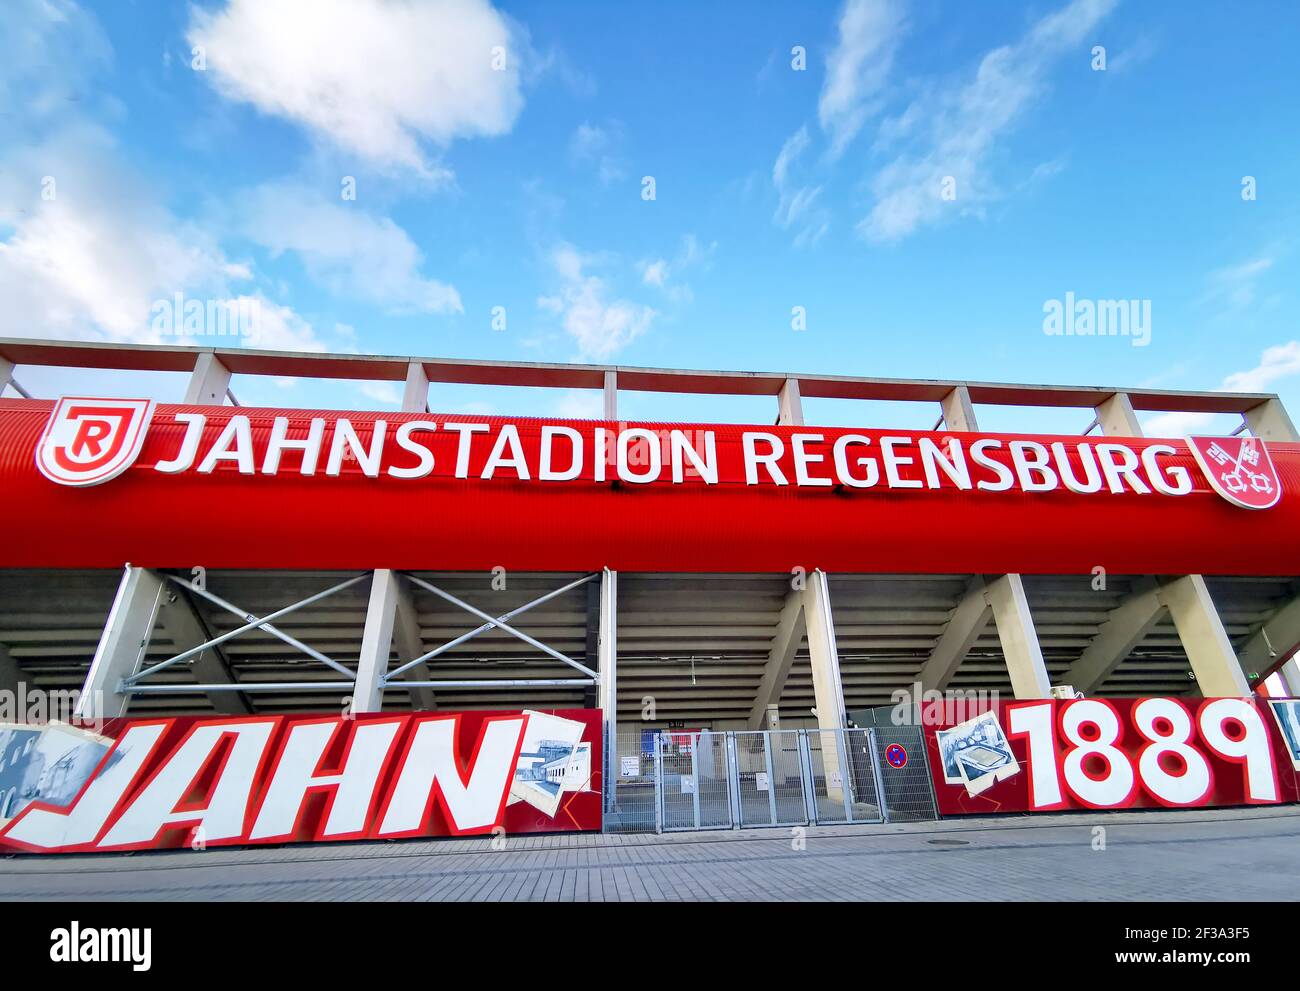 Jahnstadion Regensburg SSV Jahn 1889 rebranded renamed former Continental Arena stadium Stock Photo